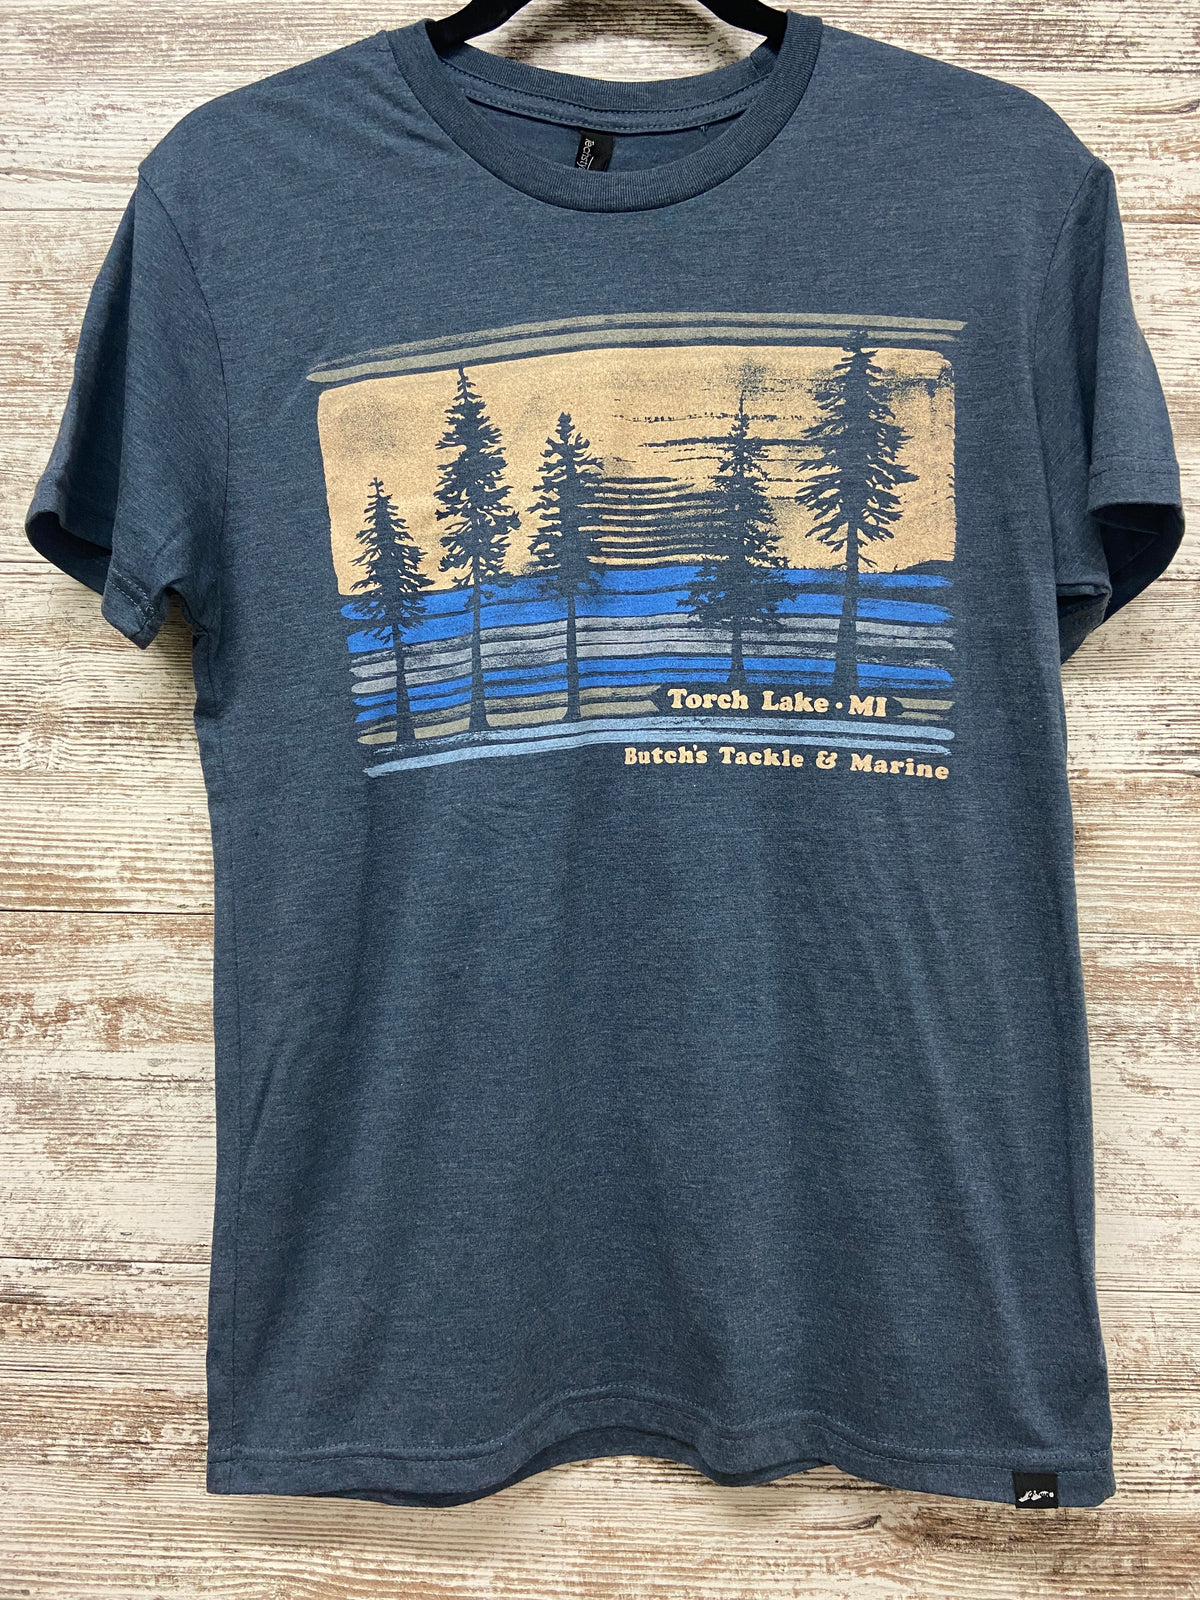 Grass River Pines T-Shirt